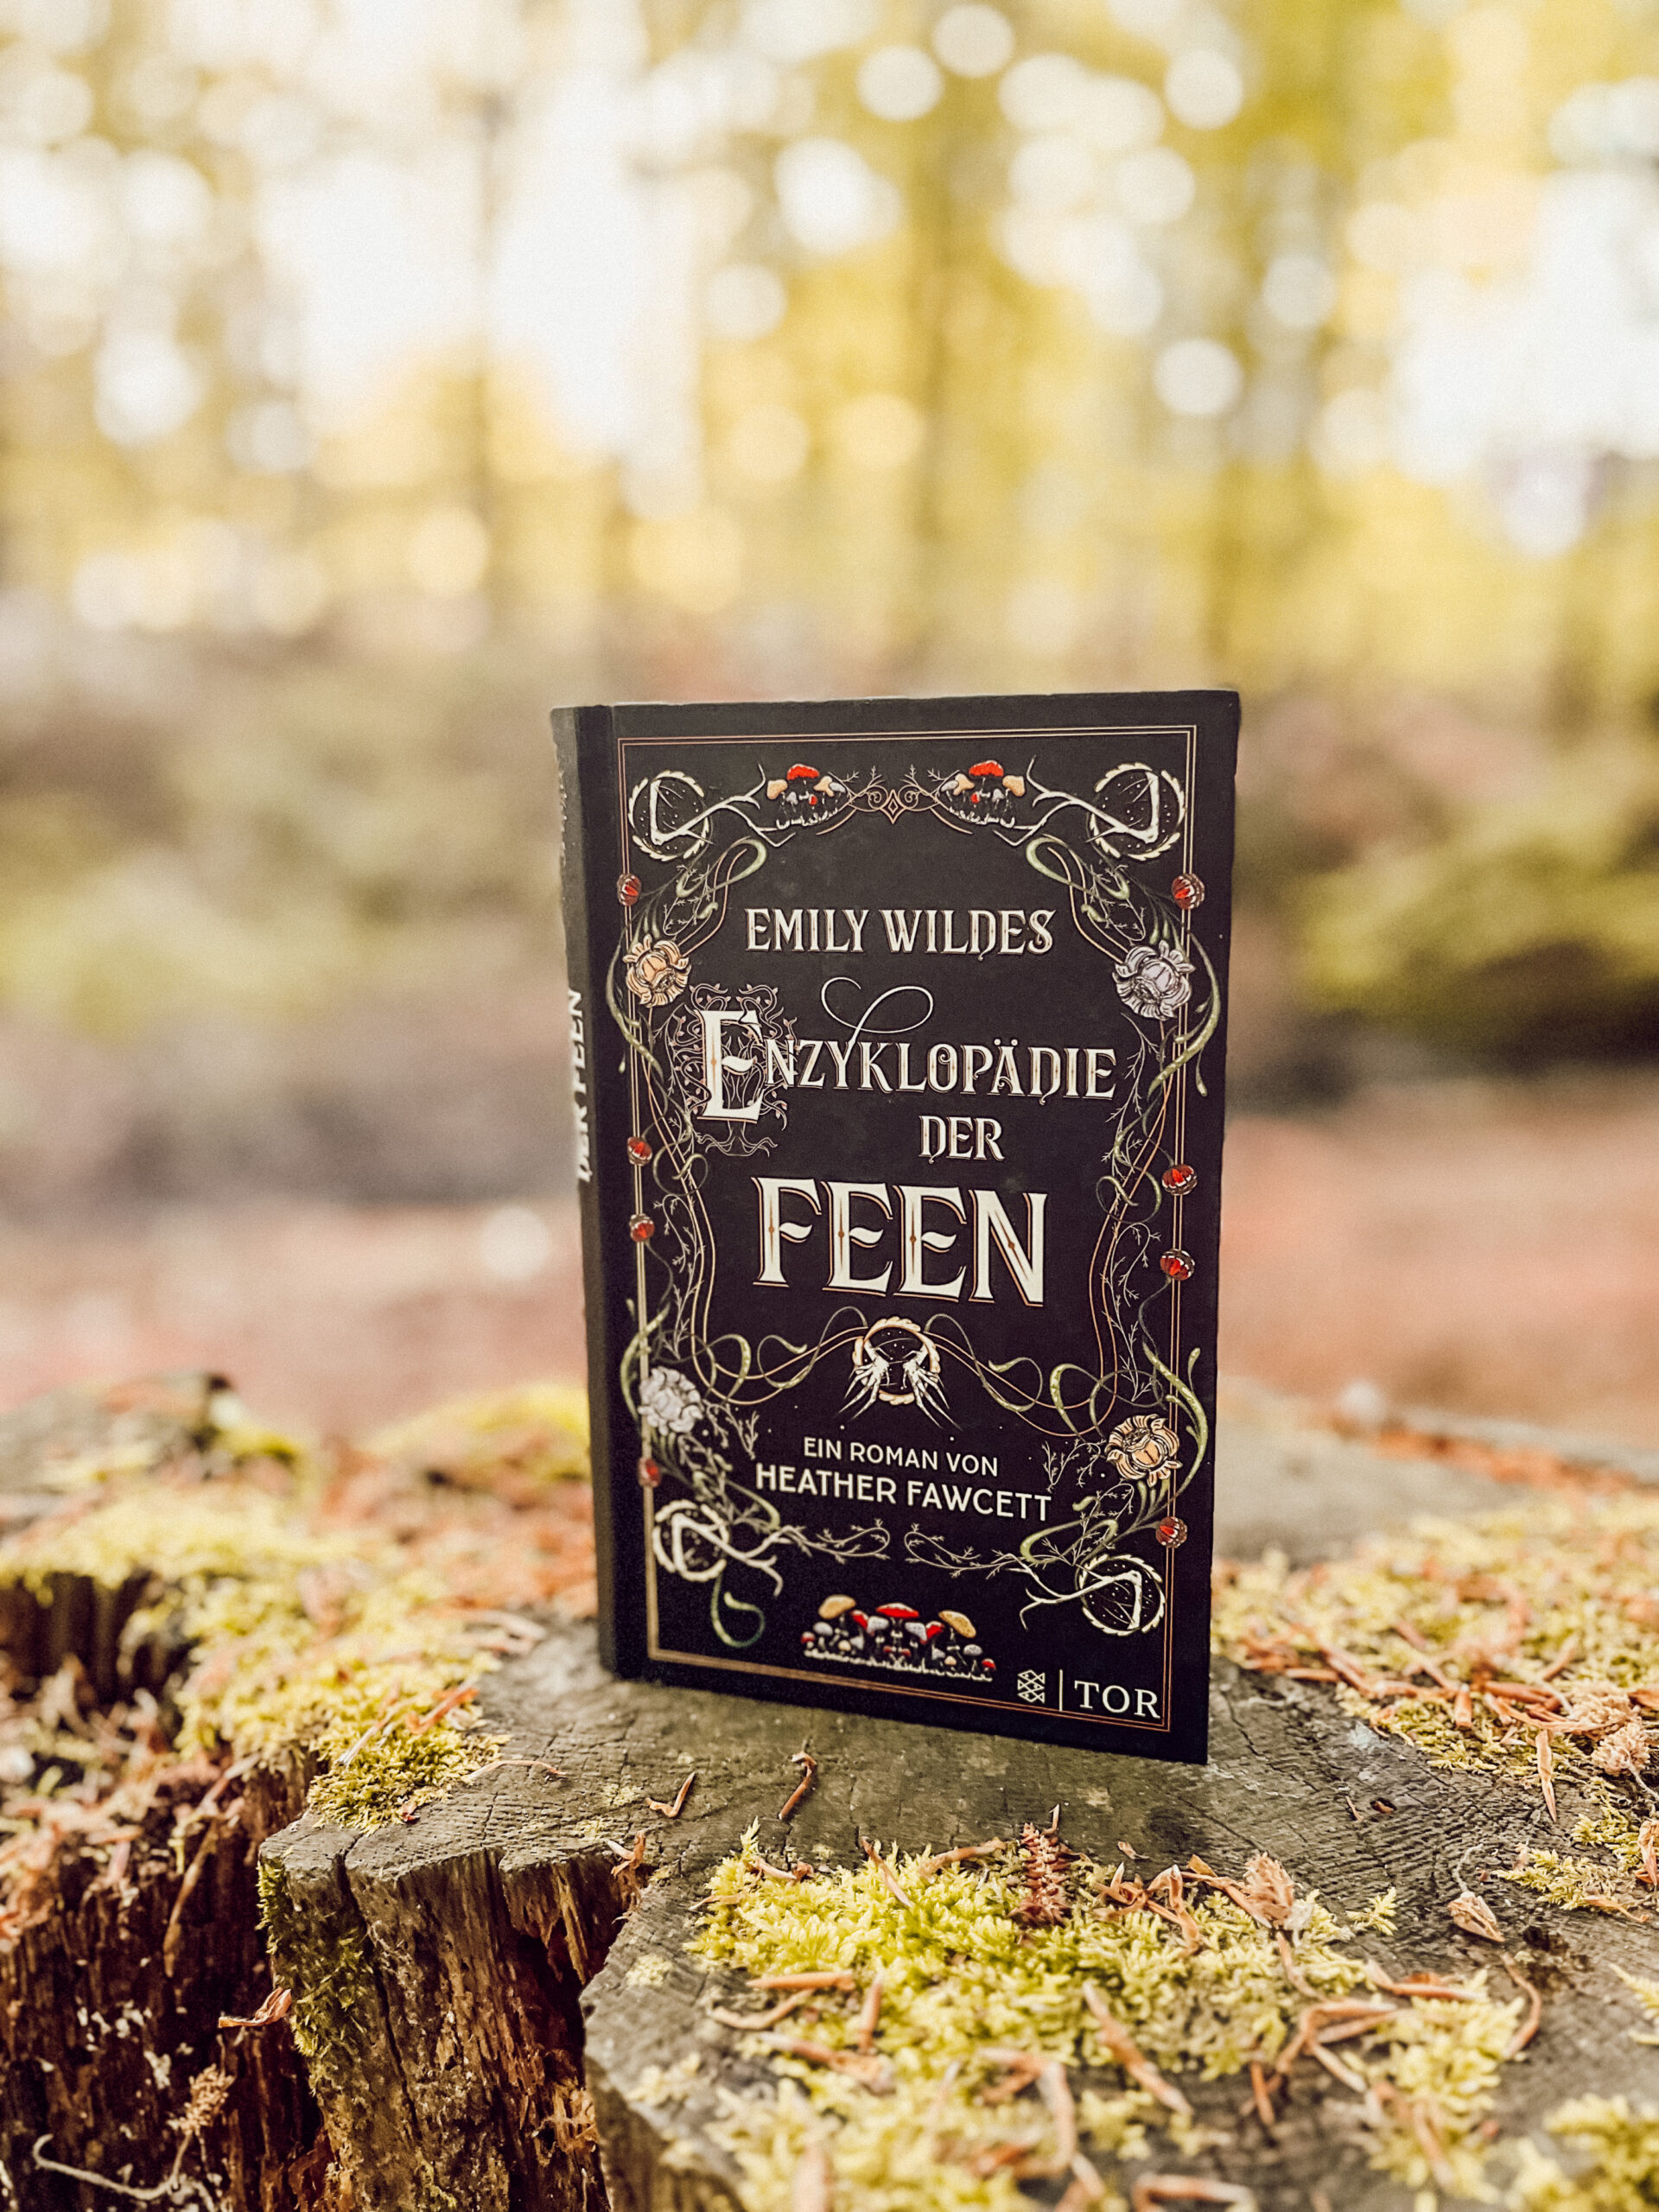 Emily Wildes Enzyklopädie der Feen Buch im Wald auf Baumstamm Fantasy